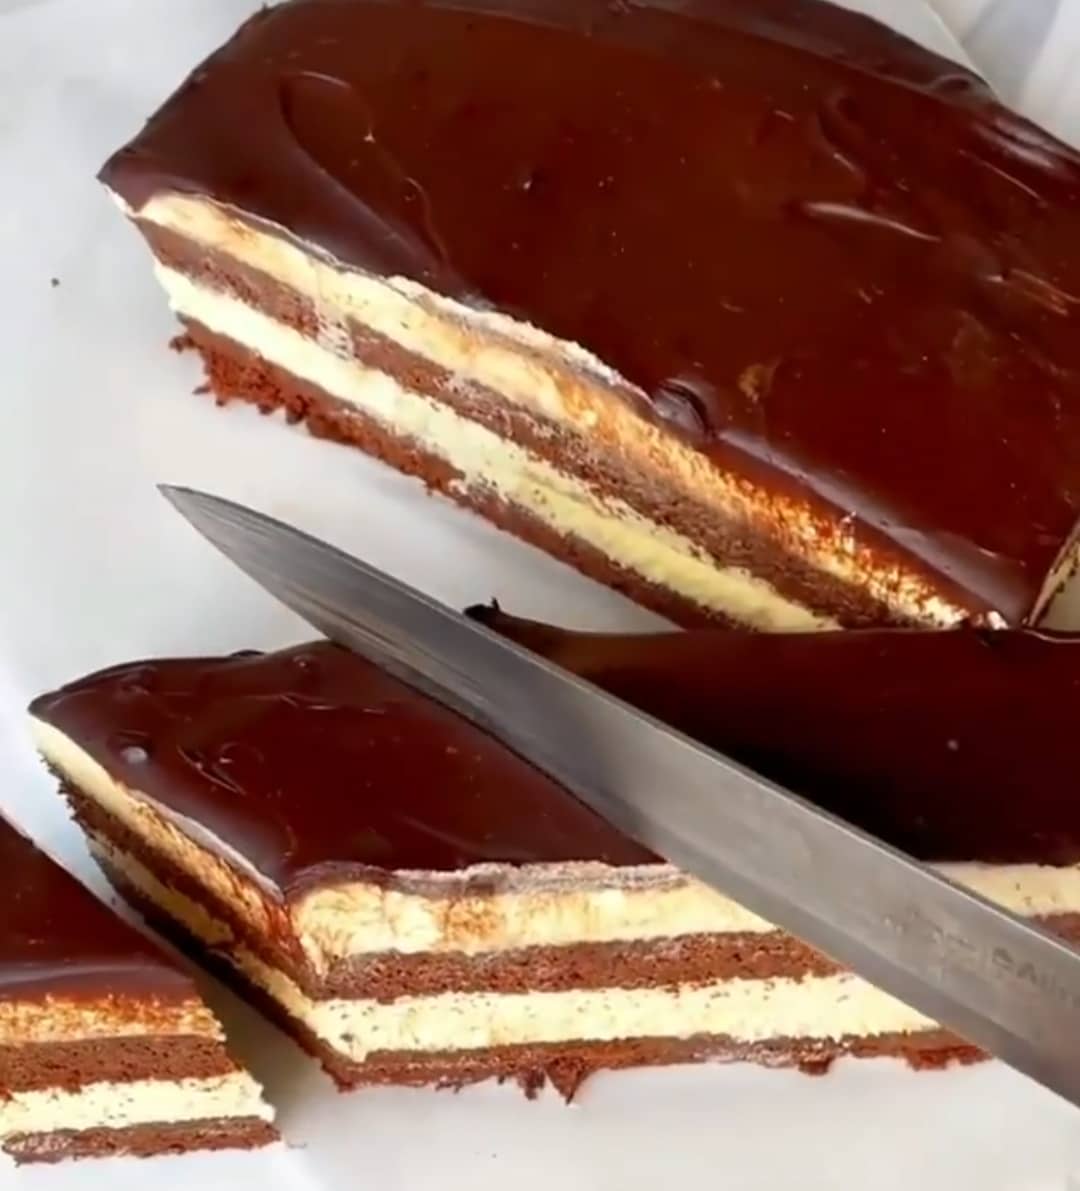 Торт "Ескімо" - найсмачніший домашній десерт, який сподобається всім. Рекомендую приготувати